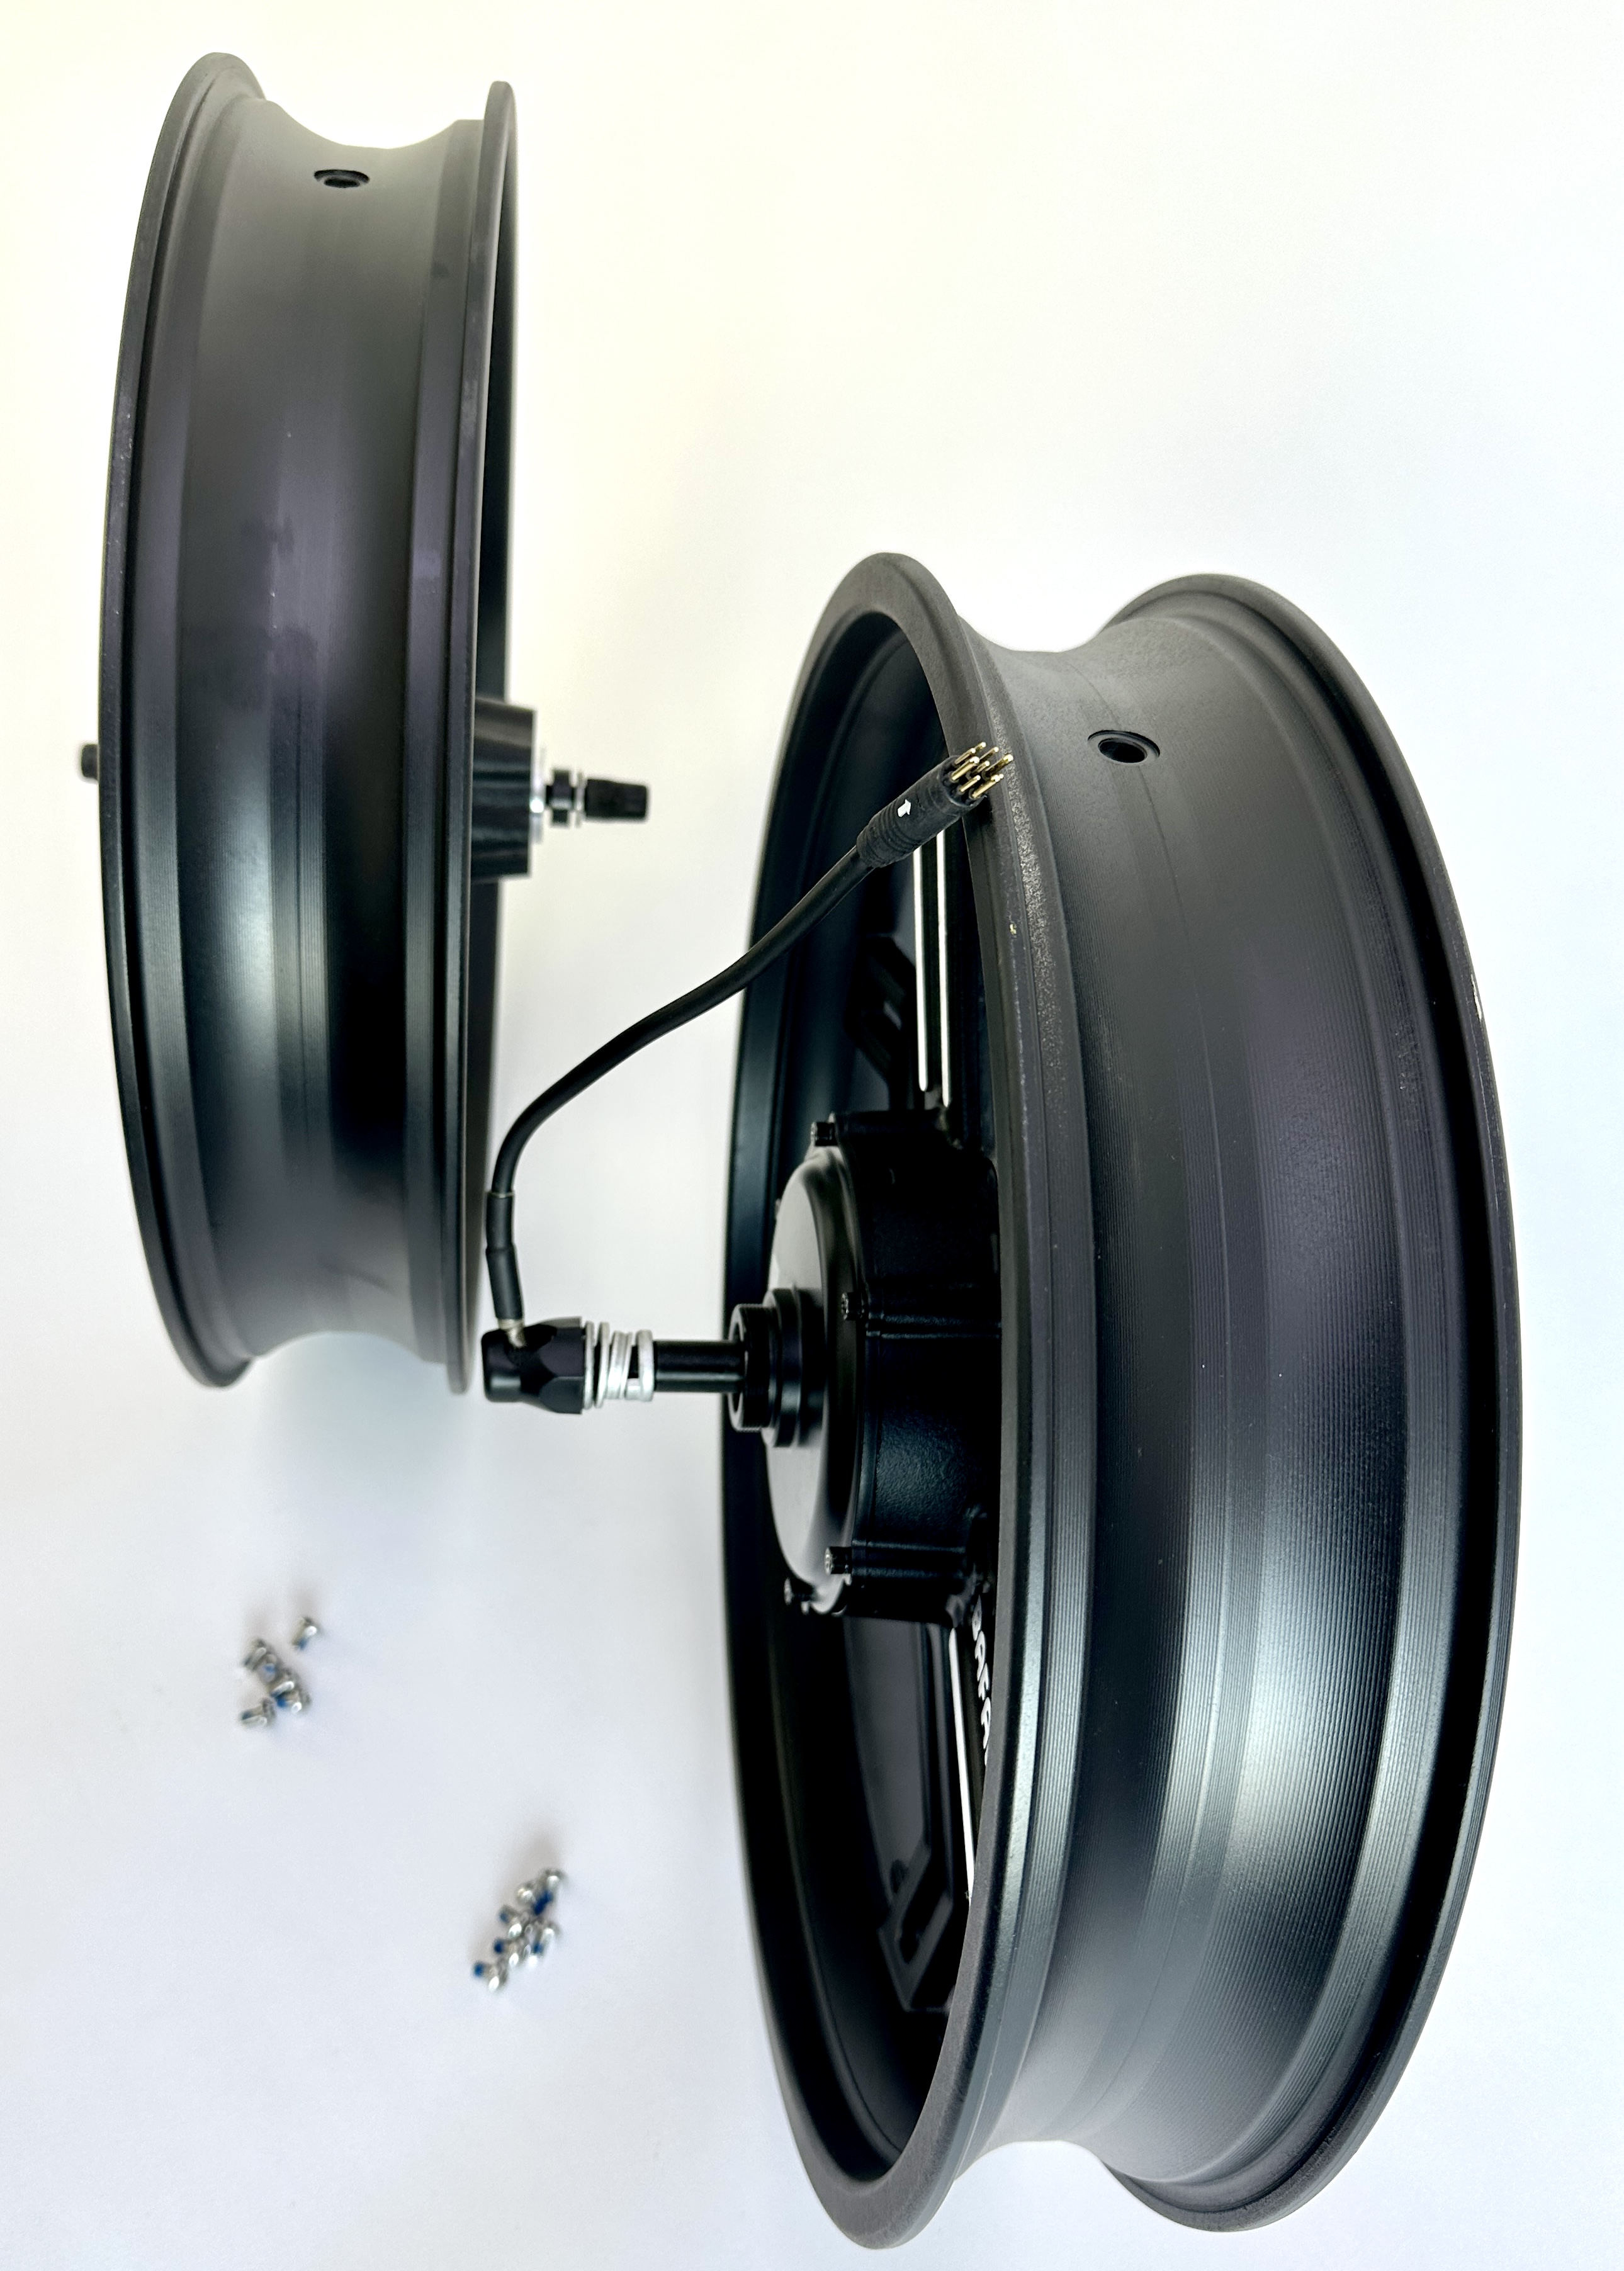 204 Juego de ruedas Bafang de aluminio fundido a presión con motor de 500 W, 20 x 4